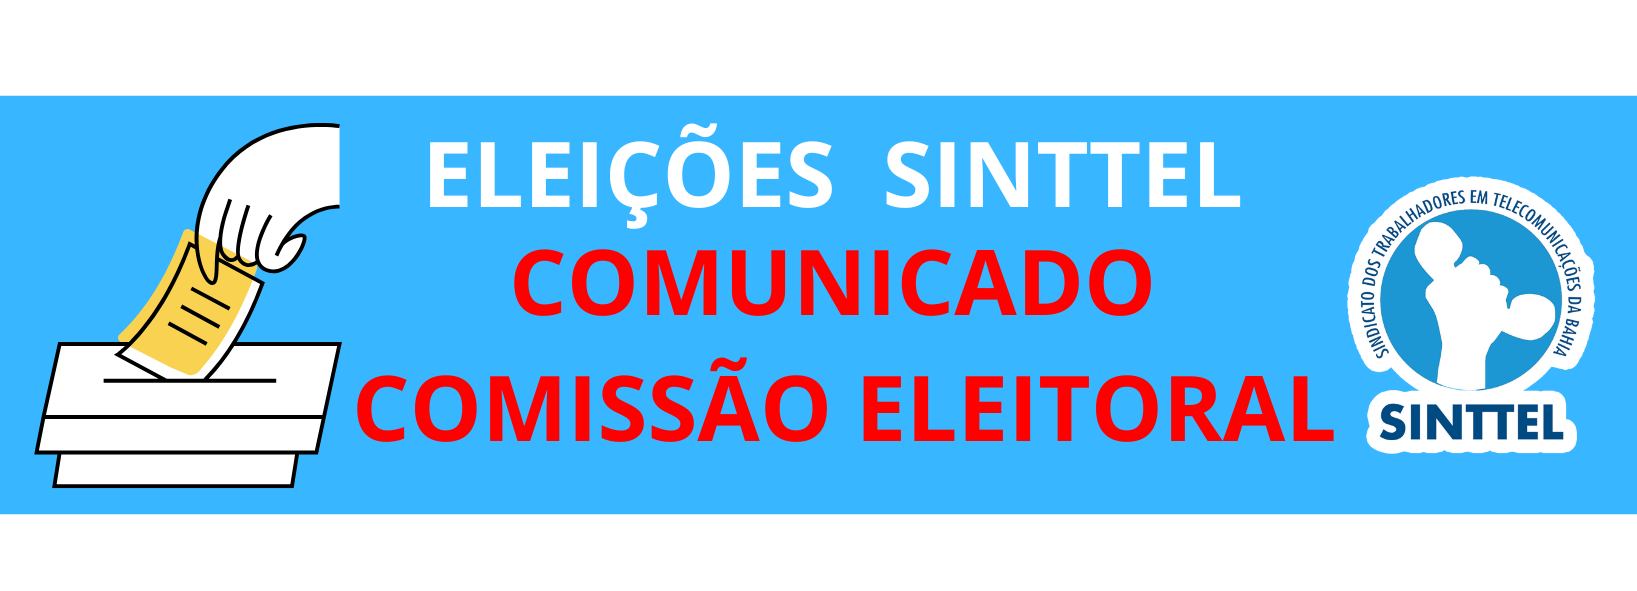 ELEIÇÕES SINTTEL: Comunicado Comissão eleitoral